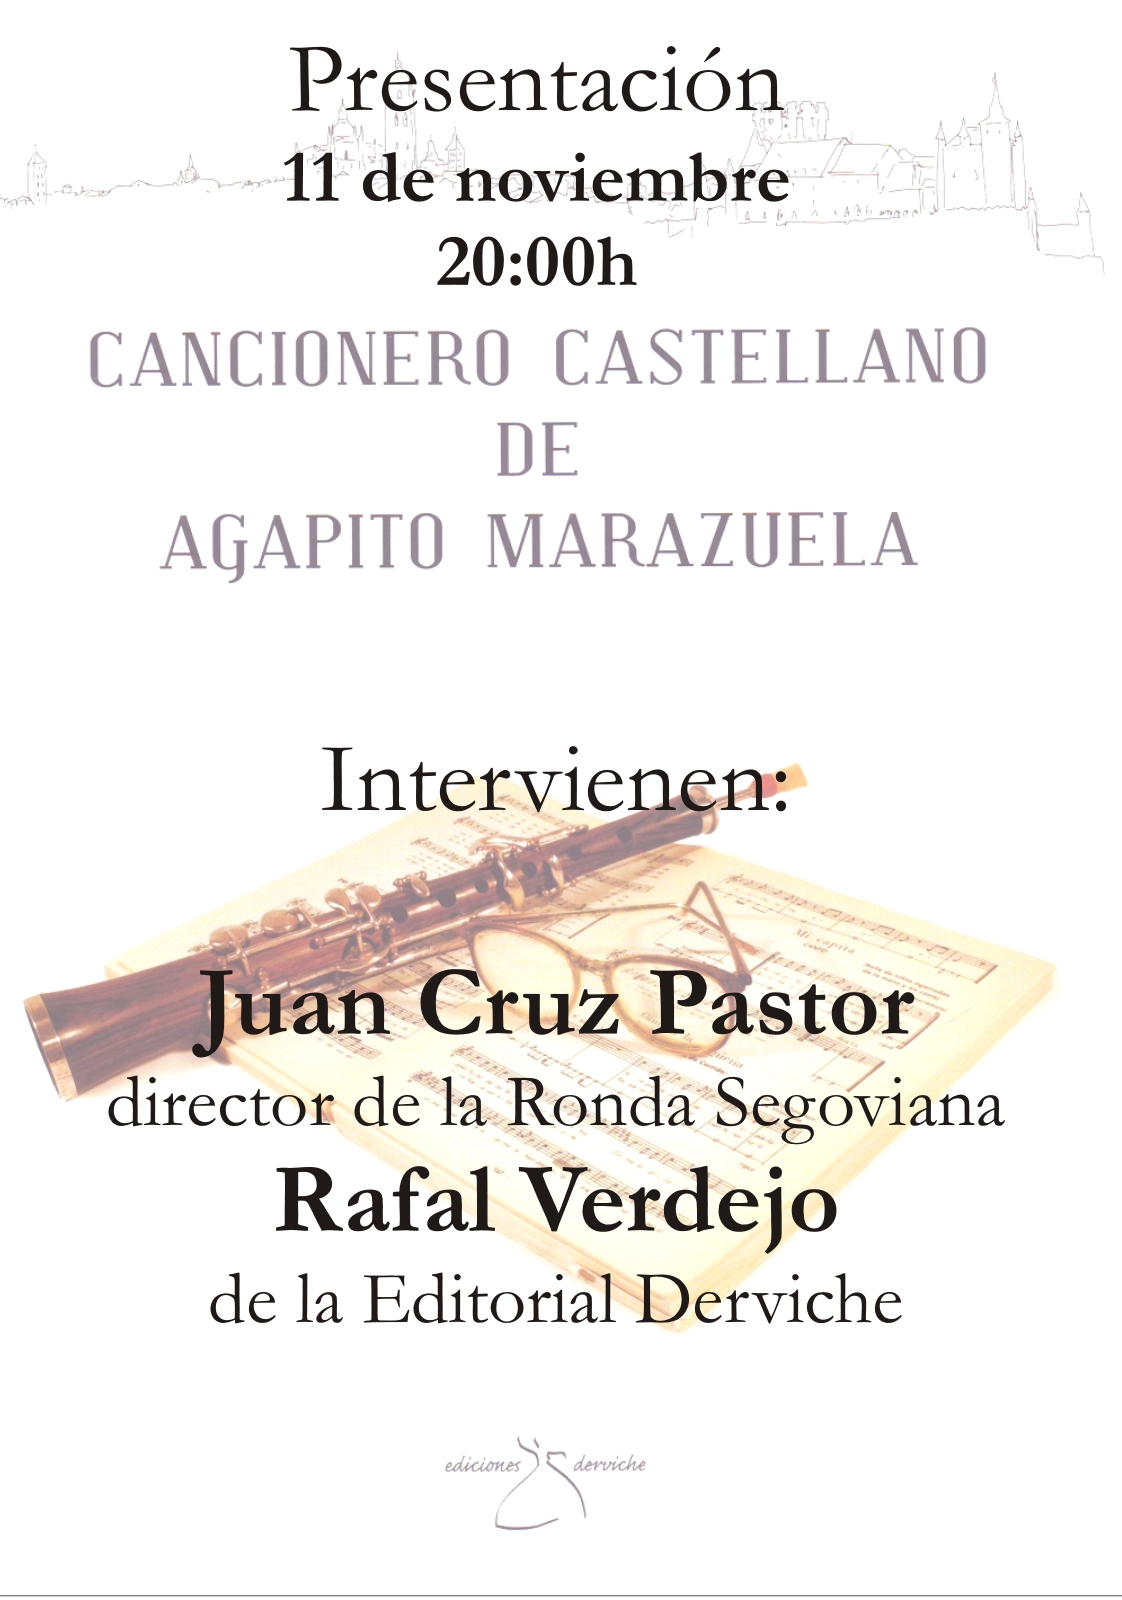 Presentación del Cancionero Castellano de Agapito Marazuela